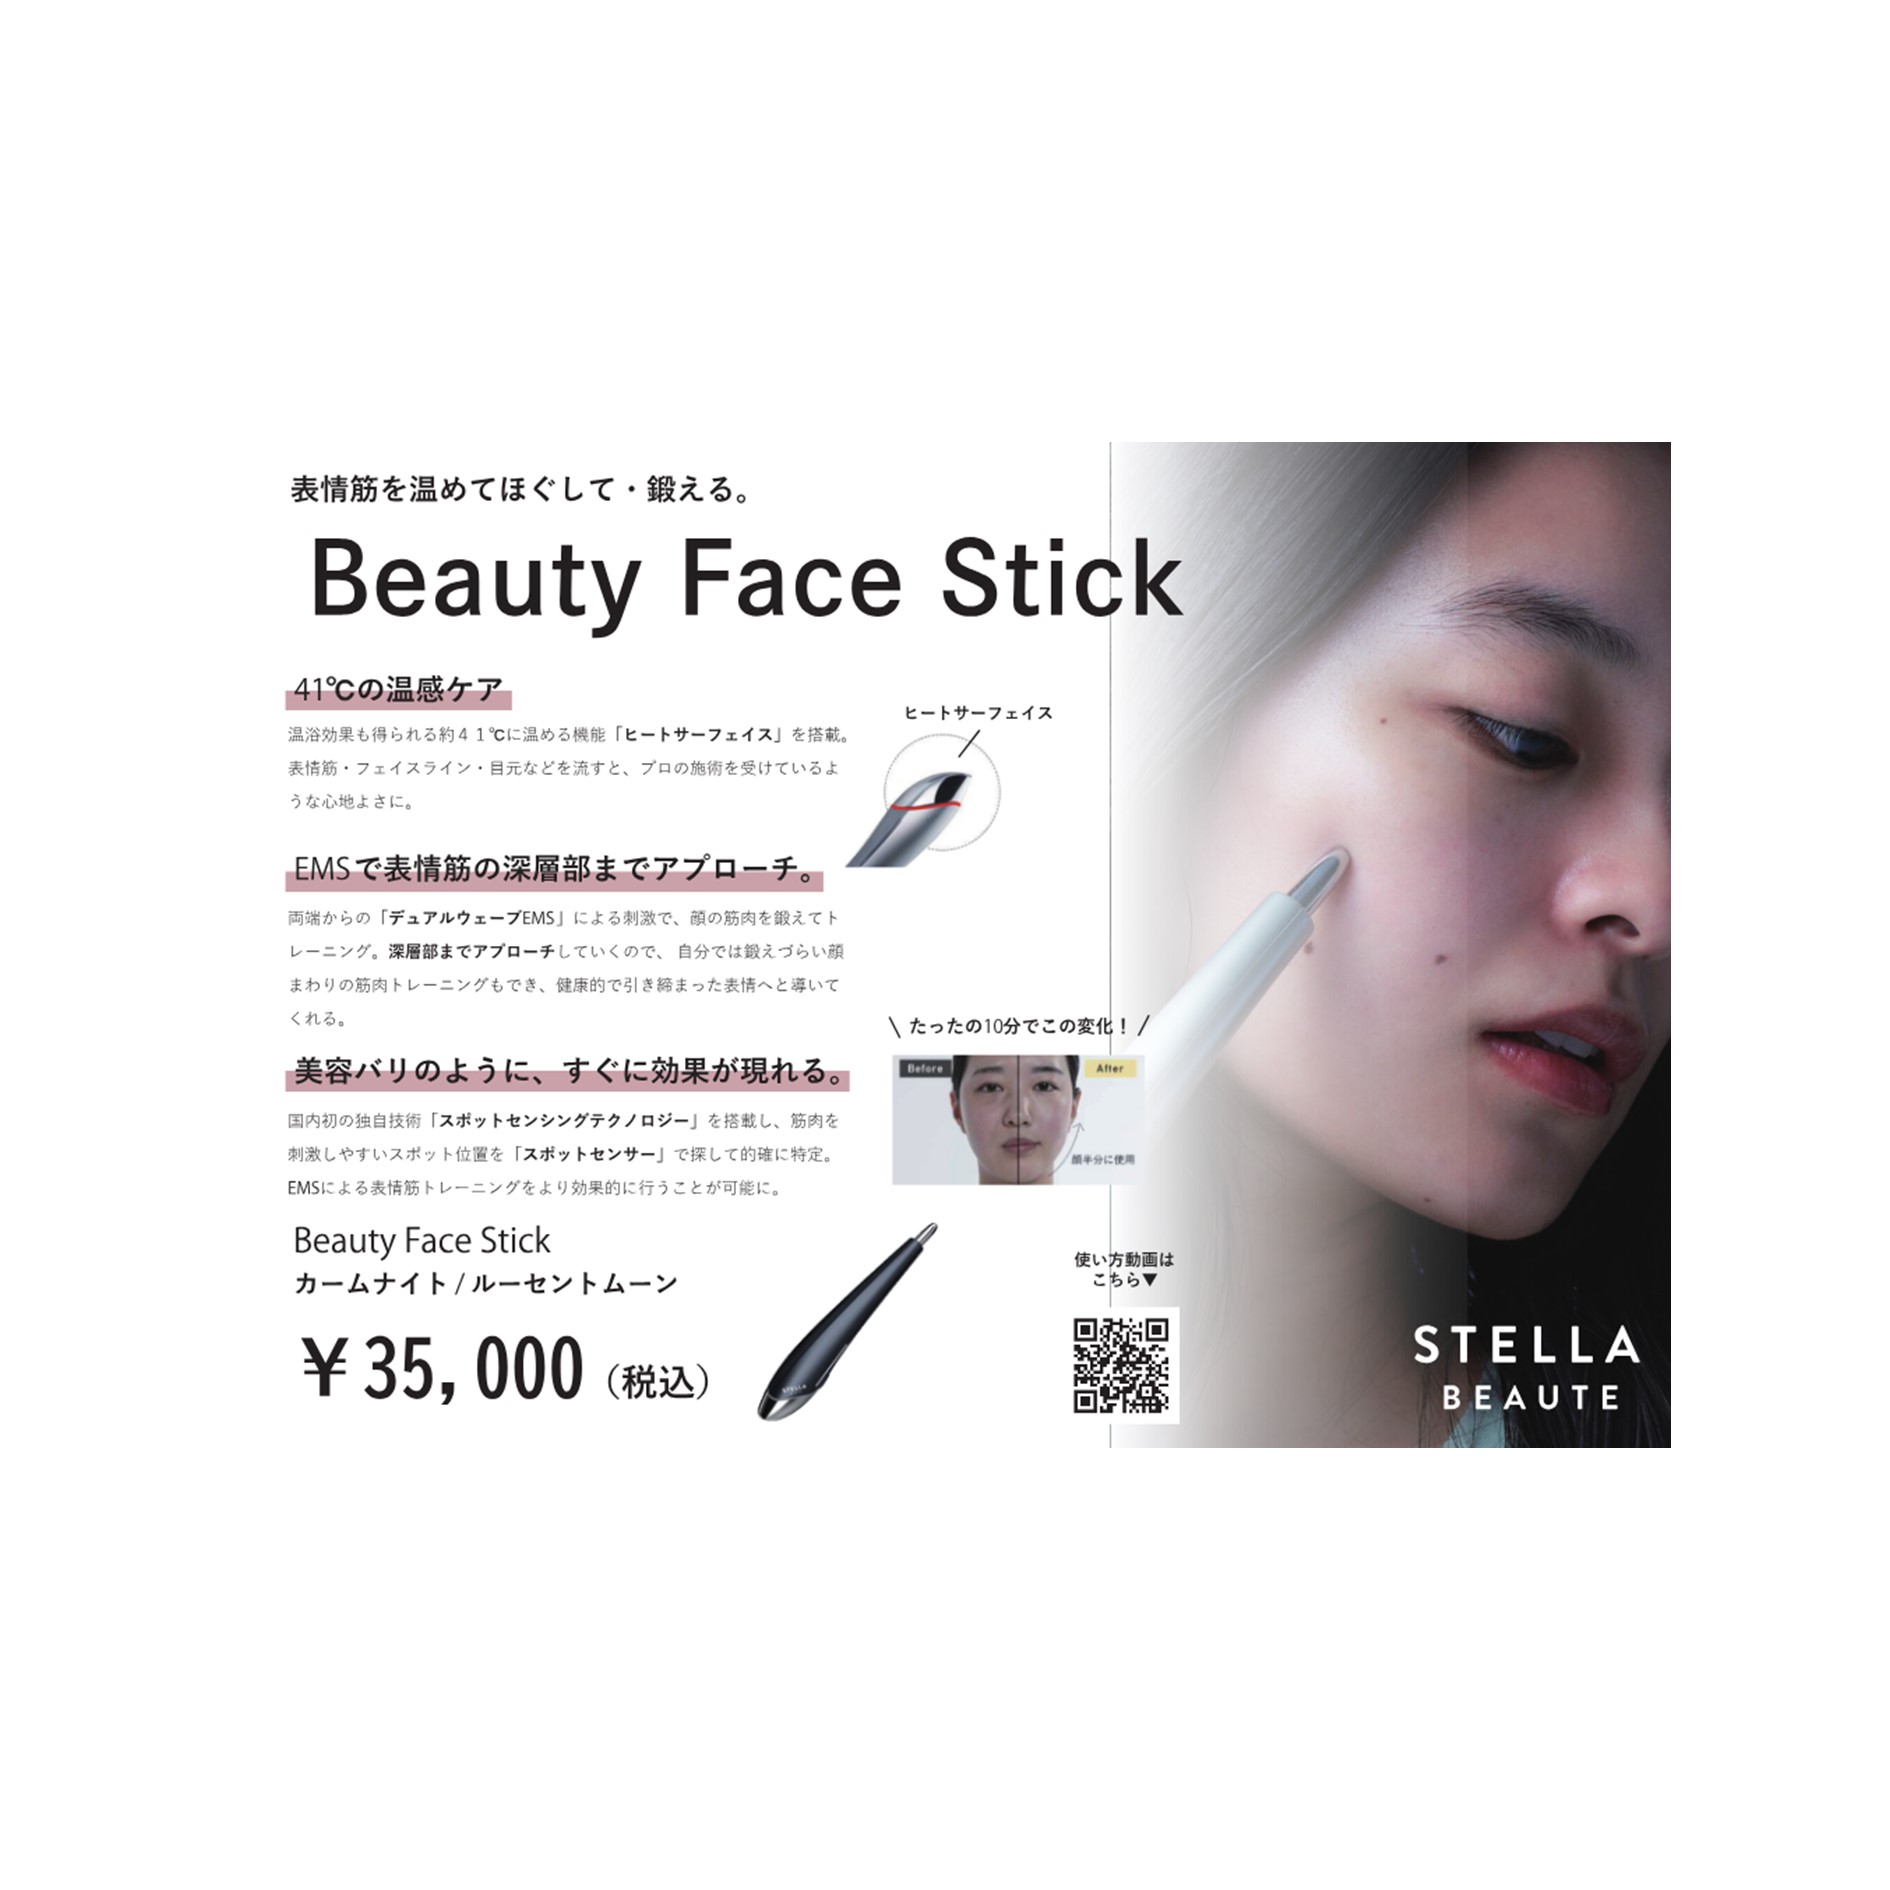 Beauty Face Stick POP